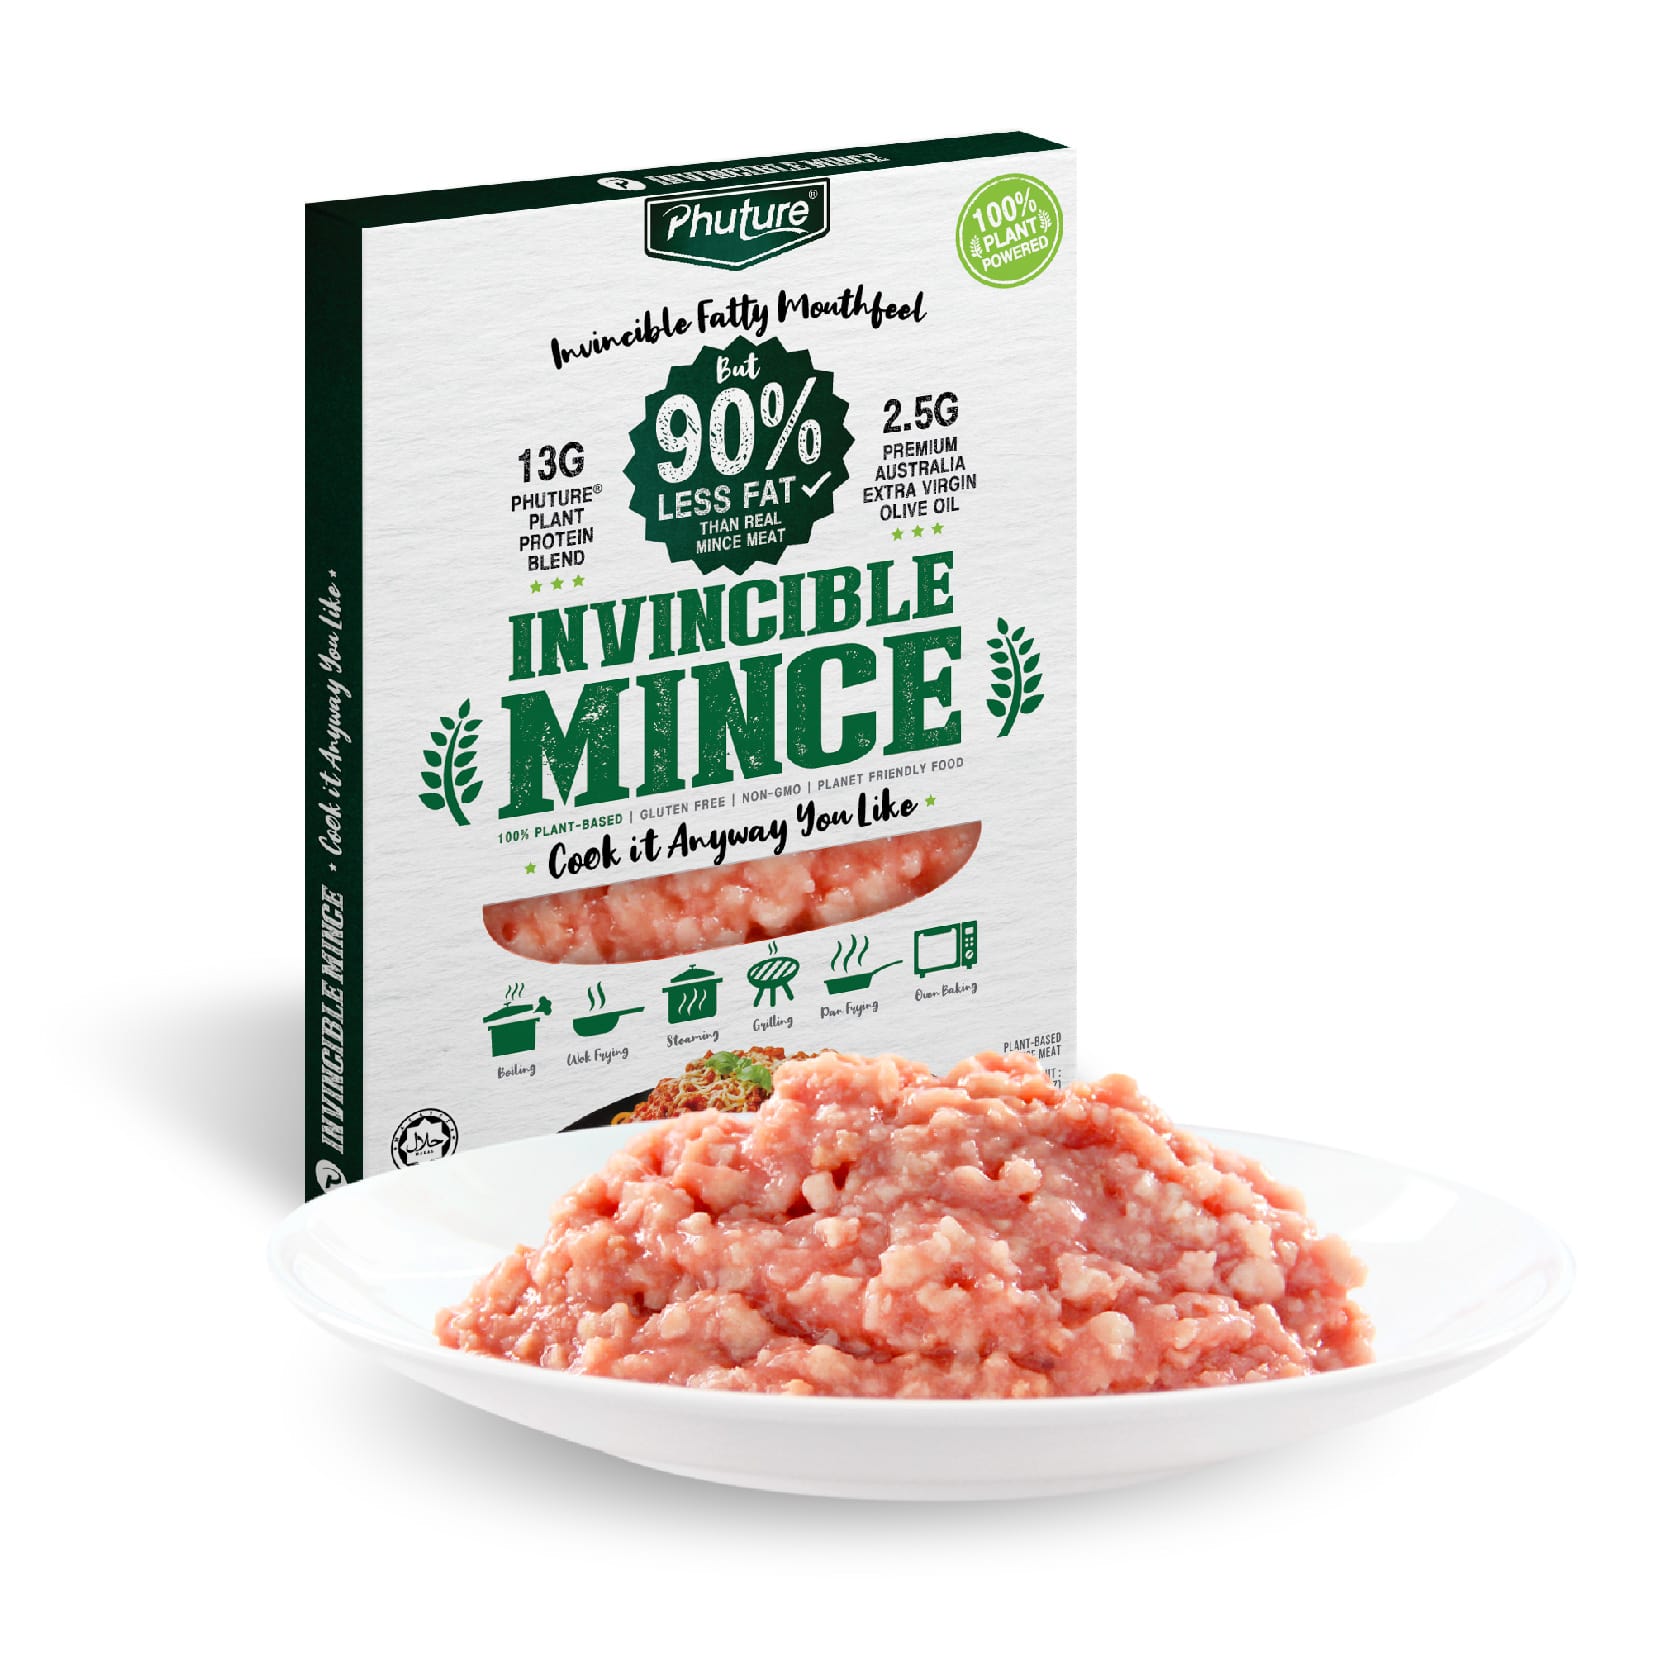 PHUTURE® Invincible Mince (6 x 250g) Bundle Pack